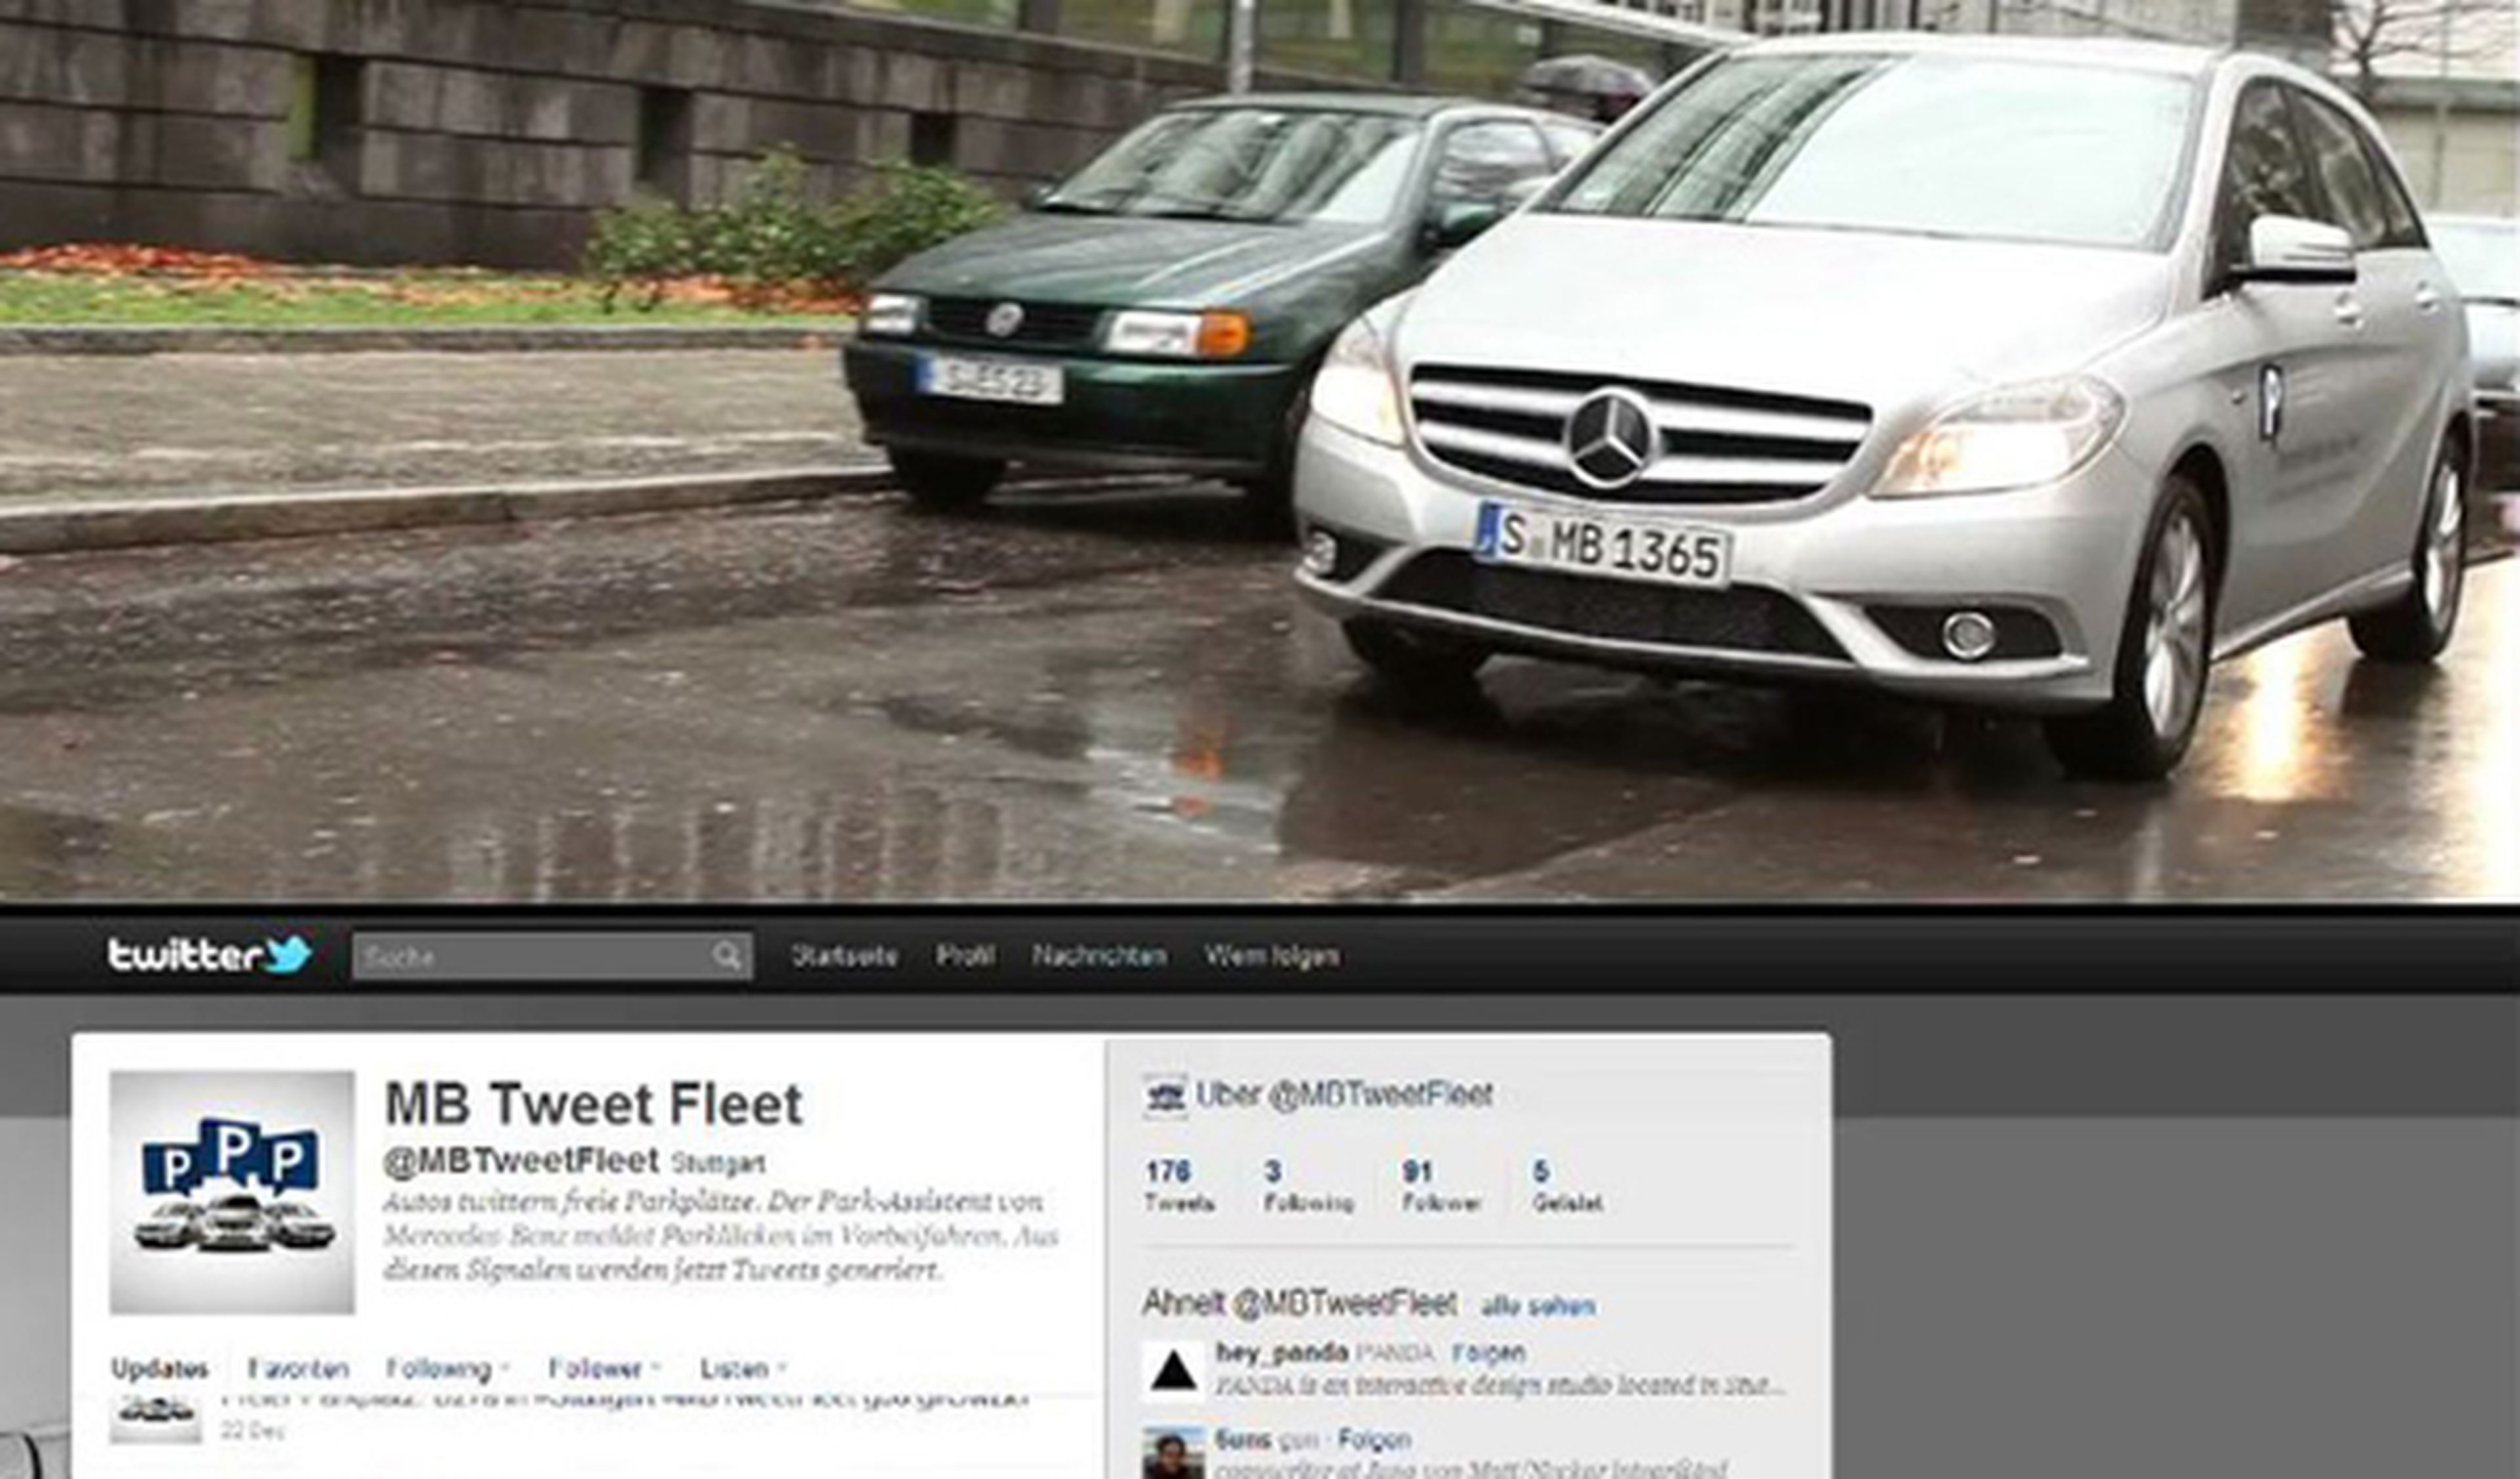 Un Mercedes que tuitea huecos de aparcamiento libres